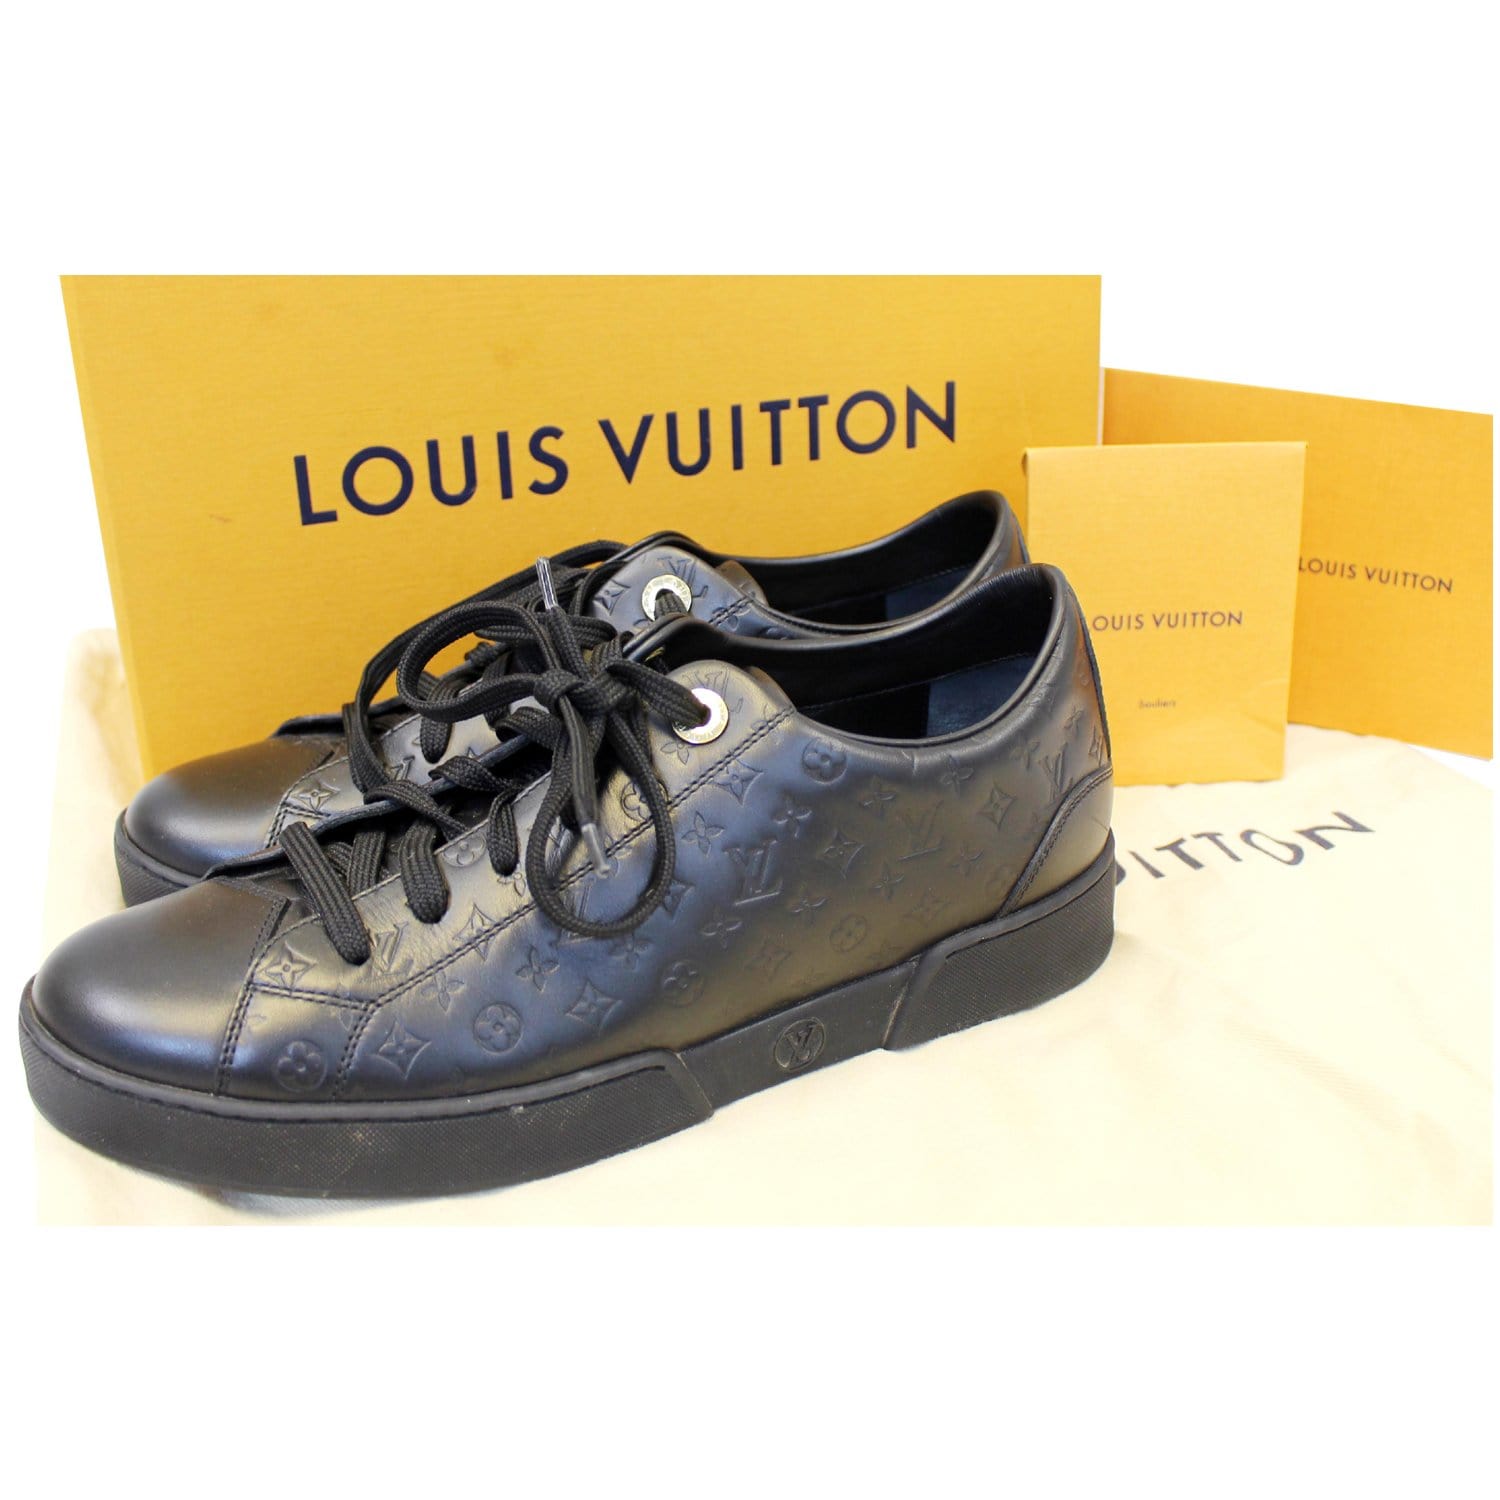 Mẫu áo sơ mi cộc tay Louis Vuitton hoạ tiết độc đạo, giá tốt